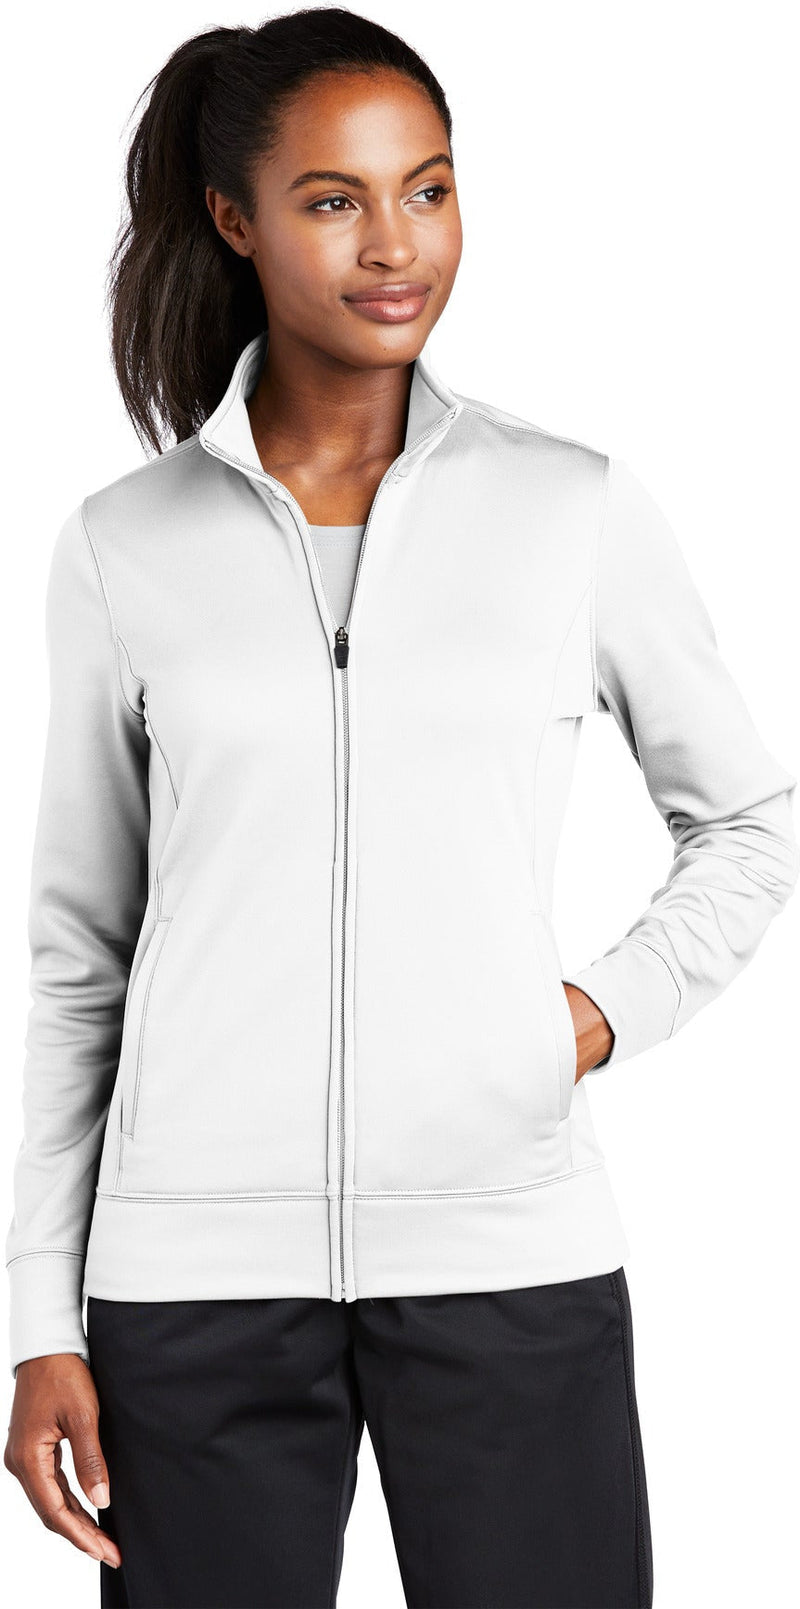  Sport-Tek Ladies Sport-Wick Fleece Full-Zip Jacket-Regular-Sport-Tek-White-S-Thread Logic